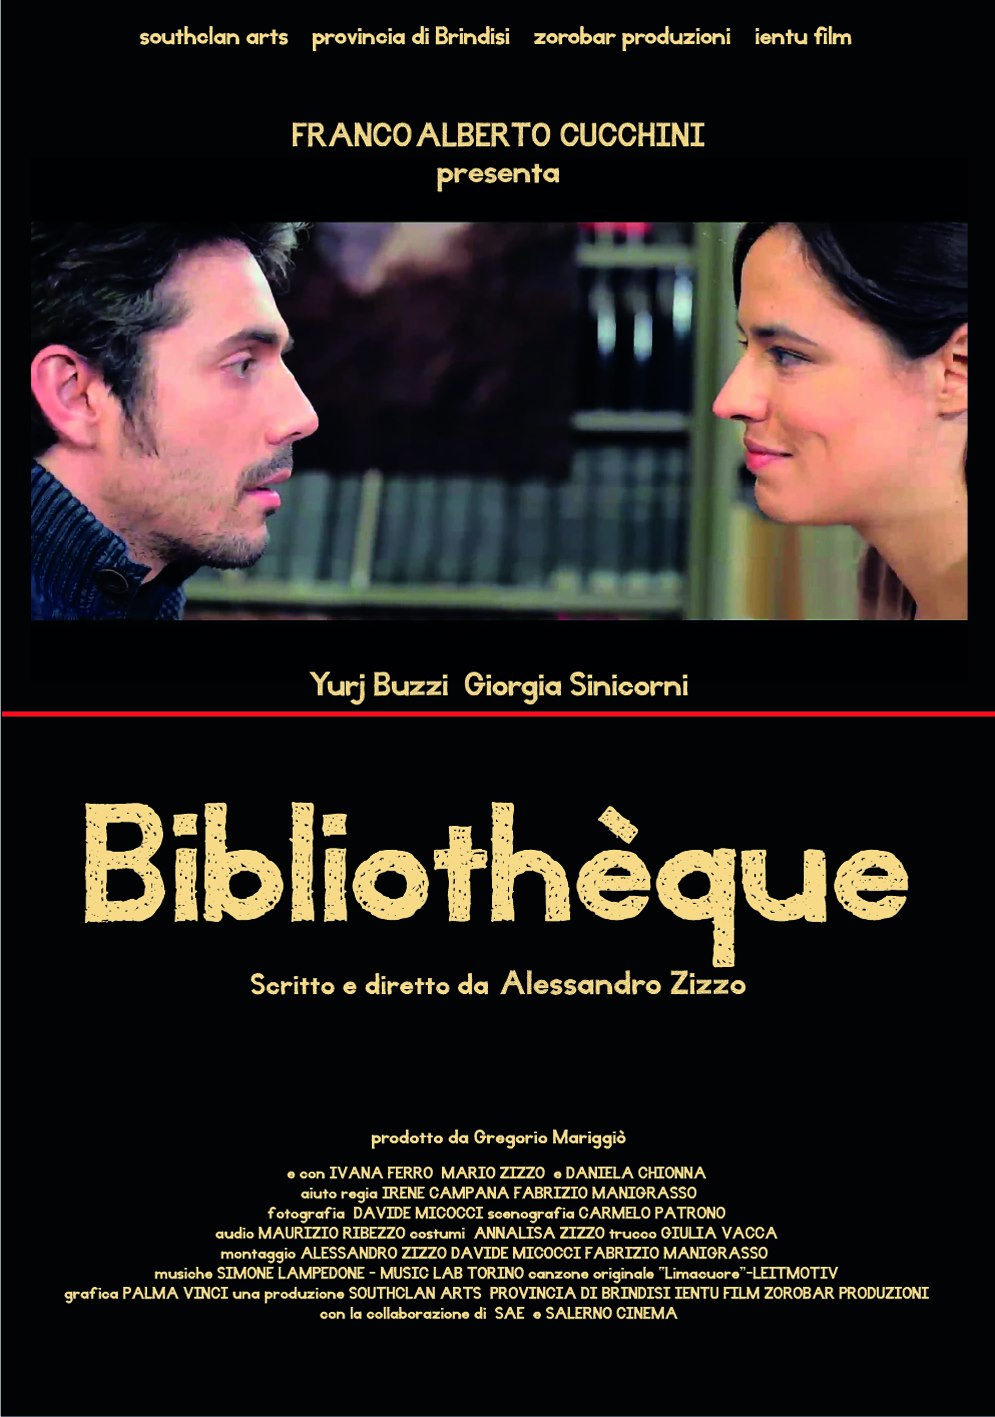 “Bibliothèque”, il corto che commuove l’Italia, cerca scrittori creativi o neofiti